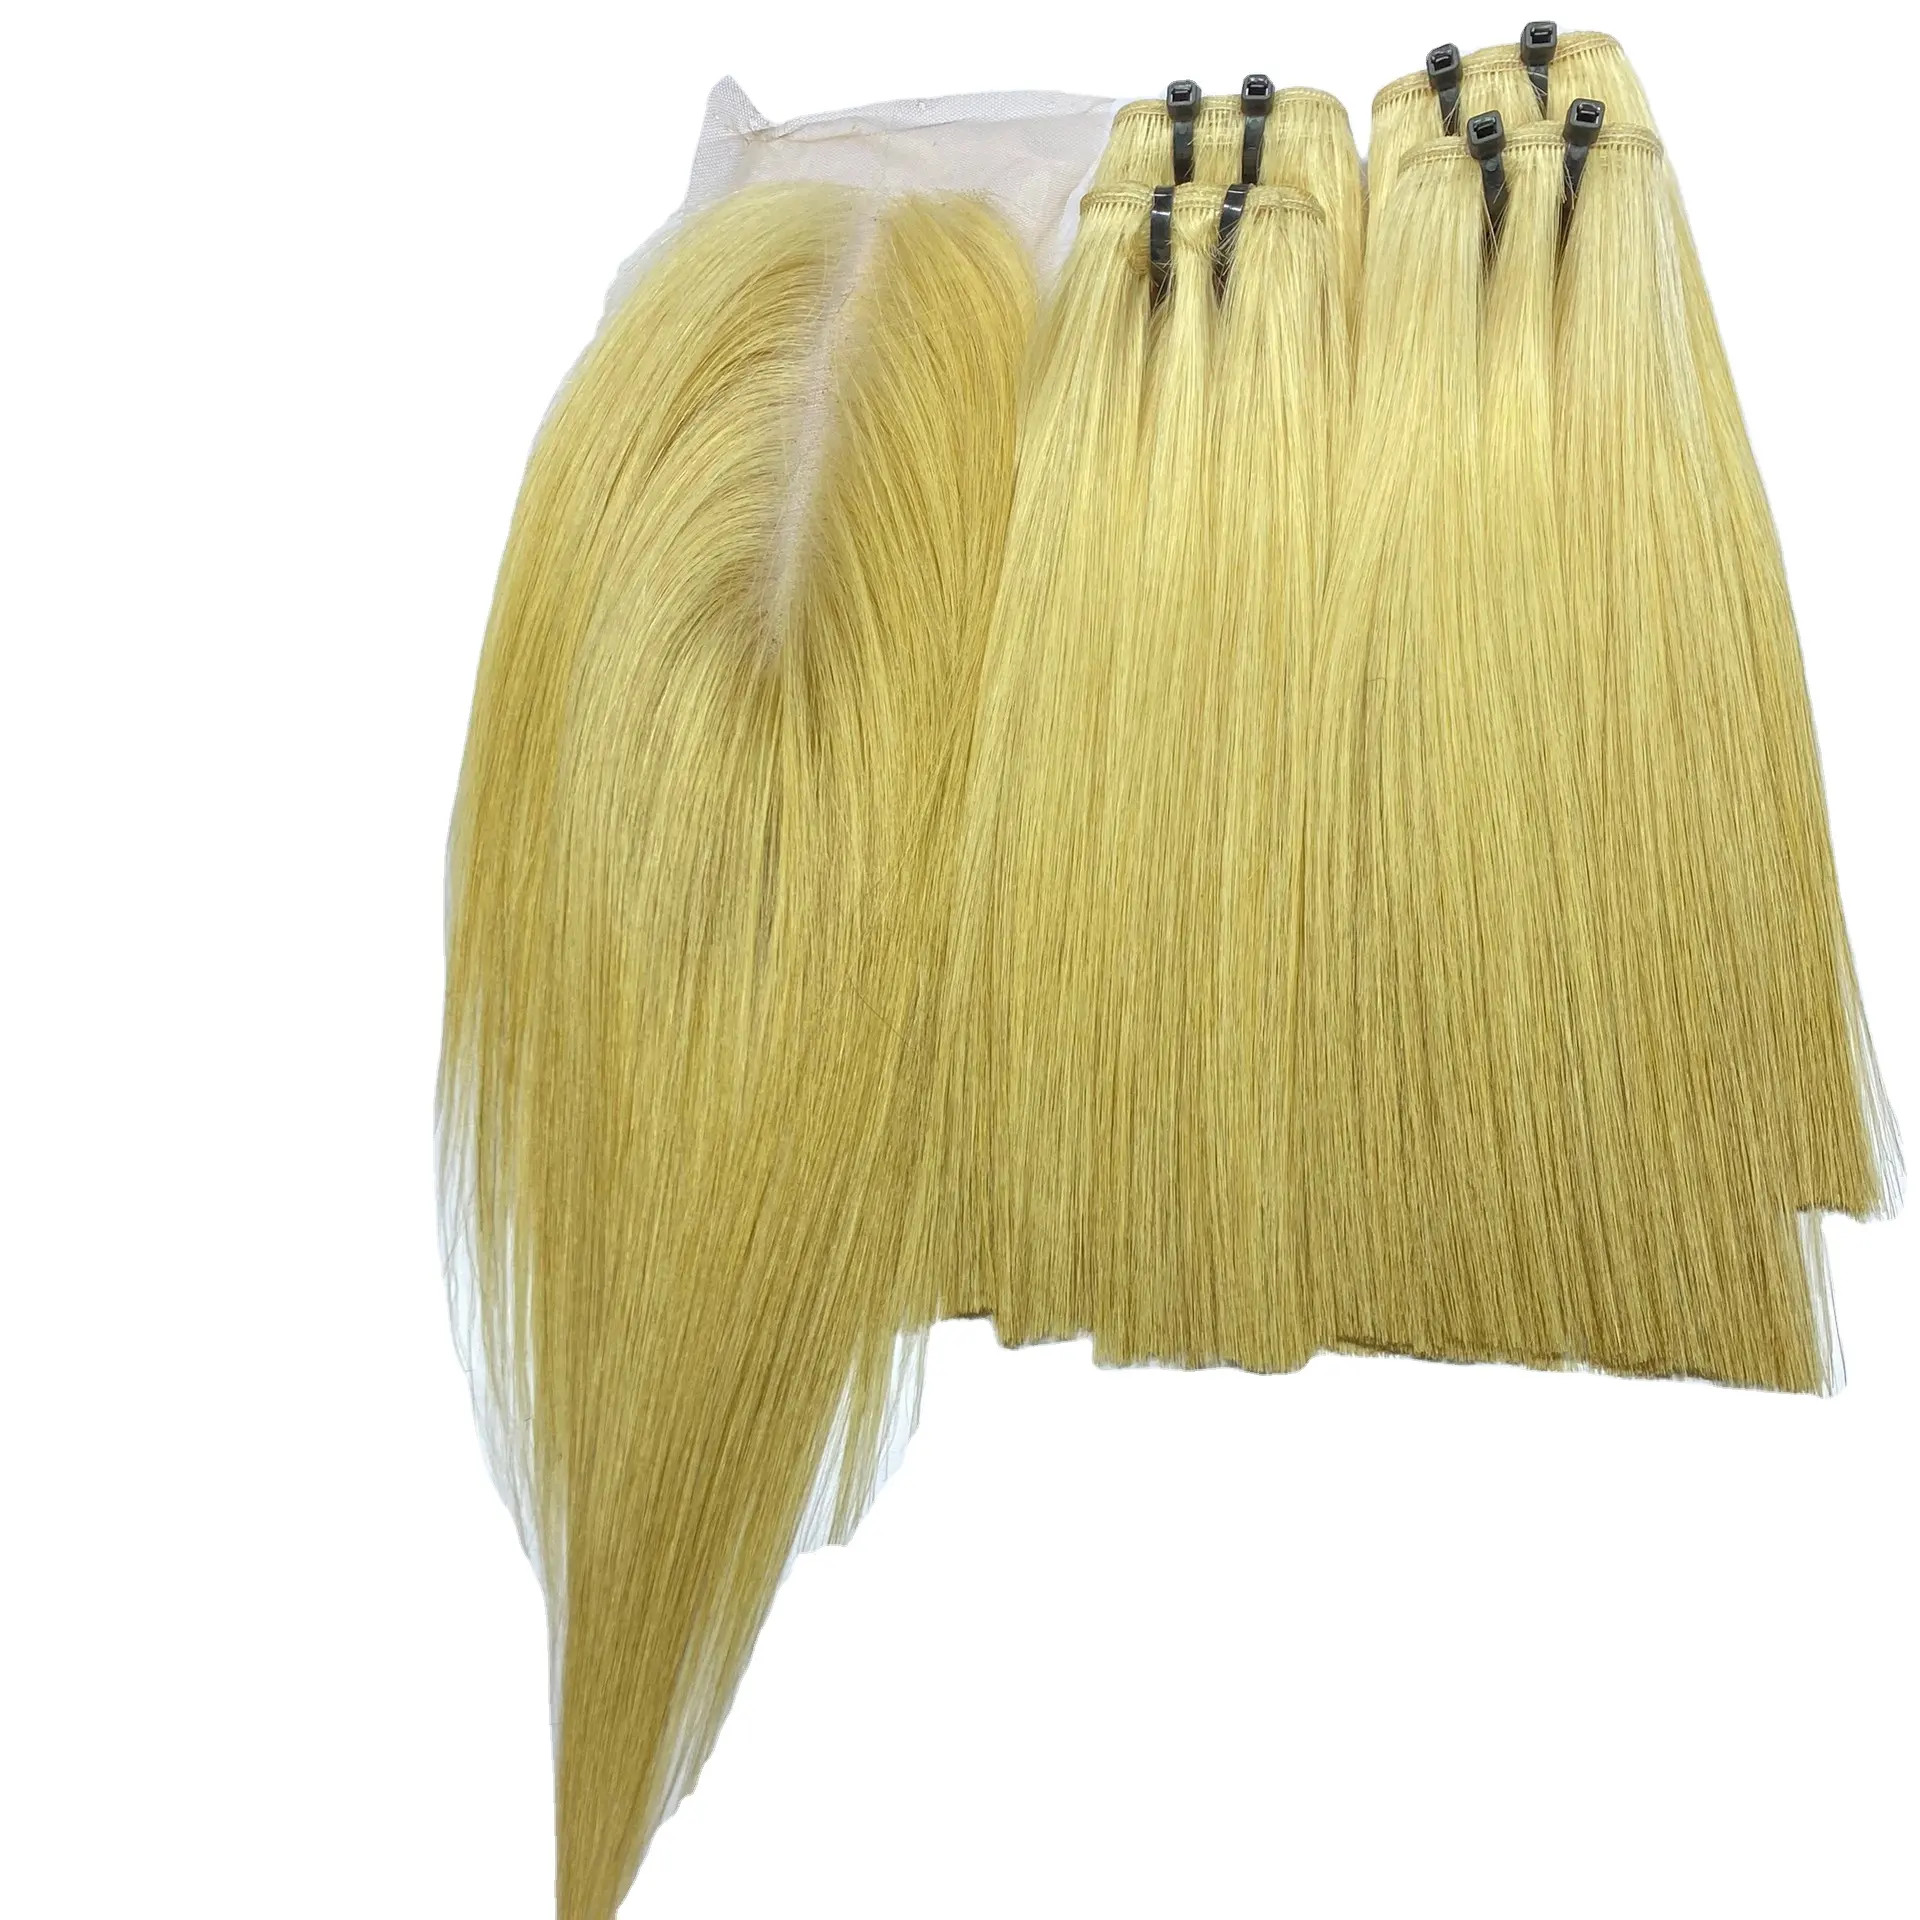 Faisceaux de cheveux raides en os de couleur blonde populaires avec fermeture tous les types d'os dessinés Super double drawn straight orange